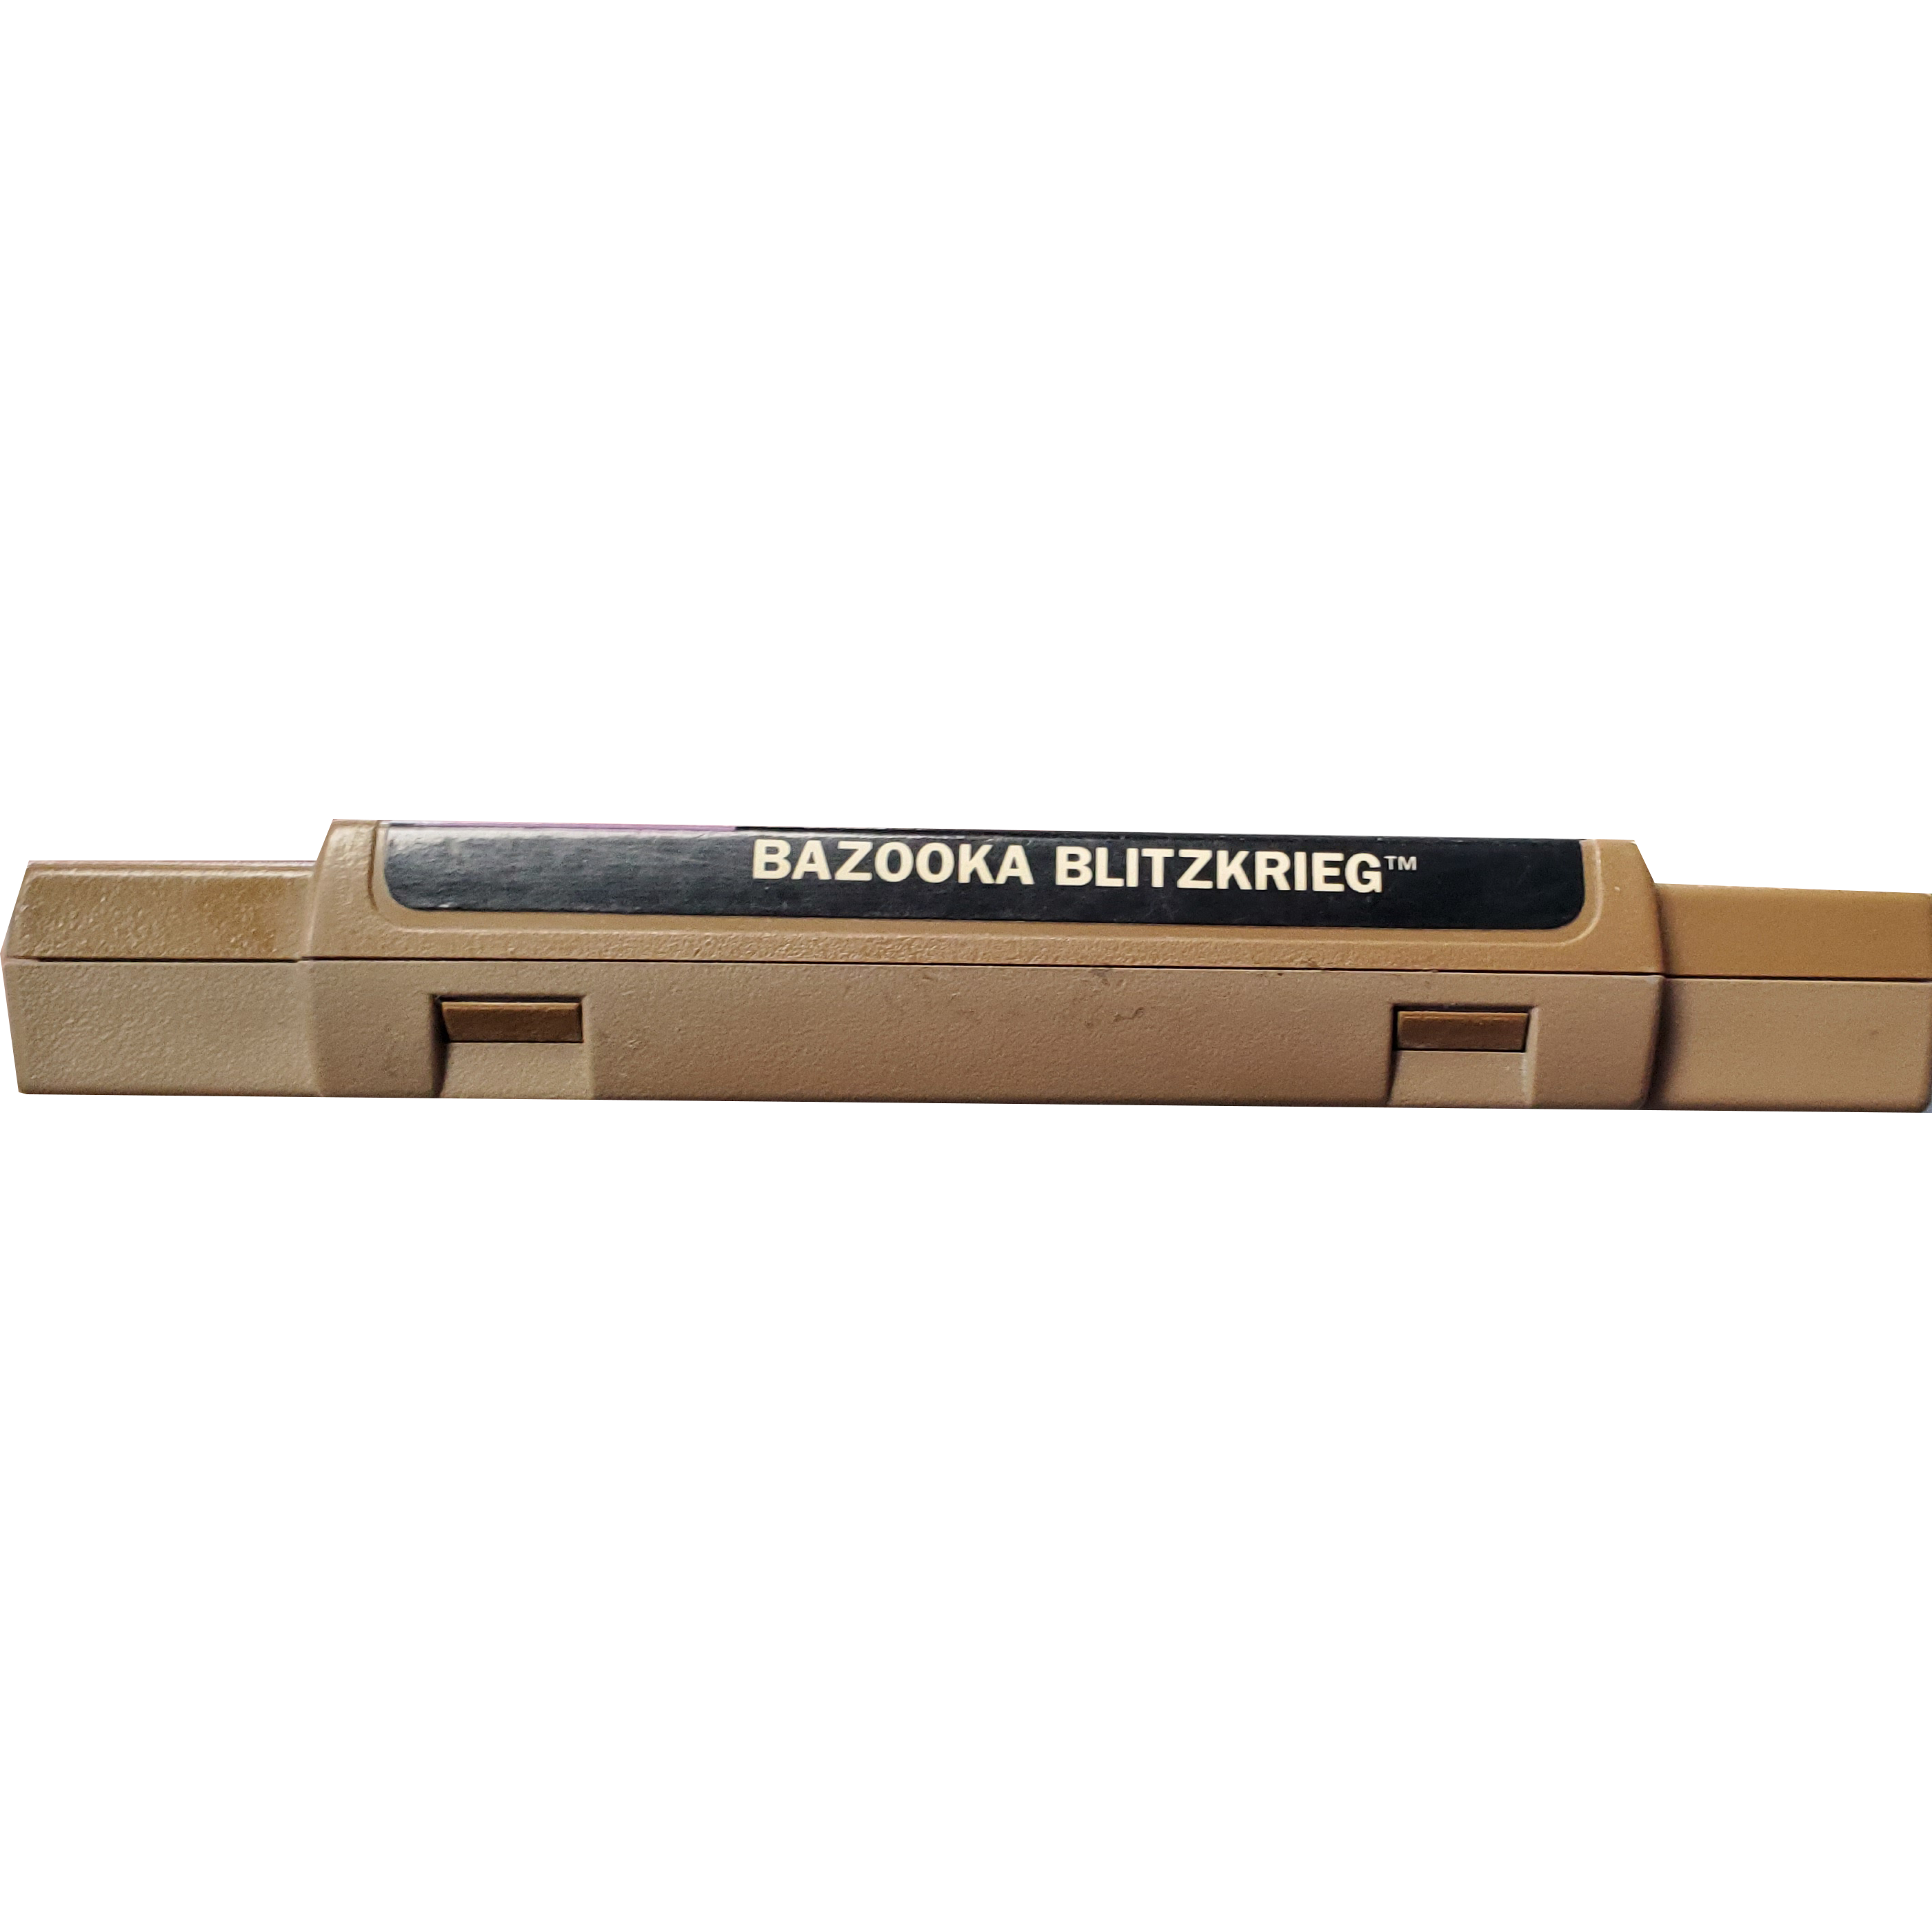 SNES - Bazooka Blitzkrieg (Cartridge Only / Rough Cart)